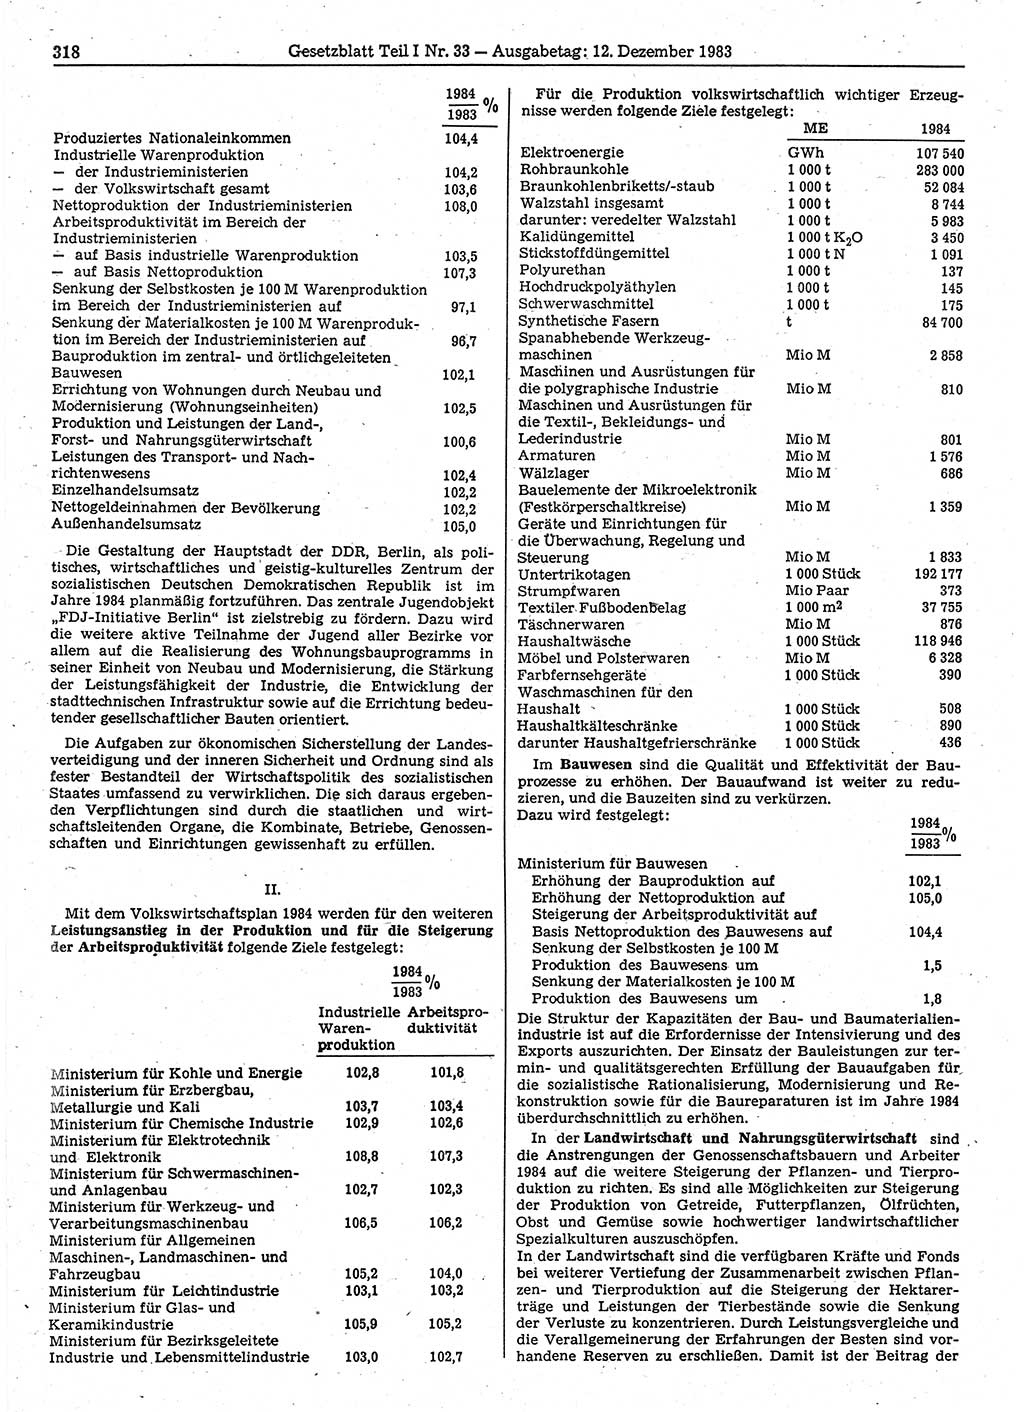 Gesetzblatt (GBl.) der Deutschen Demokratischen Republik (DDR) Teil Ⅰ 1983, Seite 318 (GBl. DDR Ⅰ 1983, S. 318)